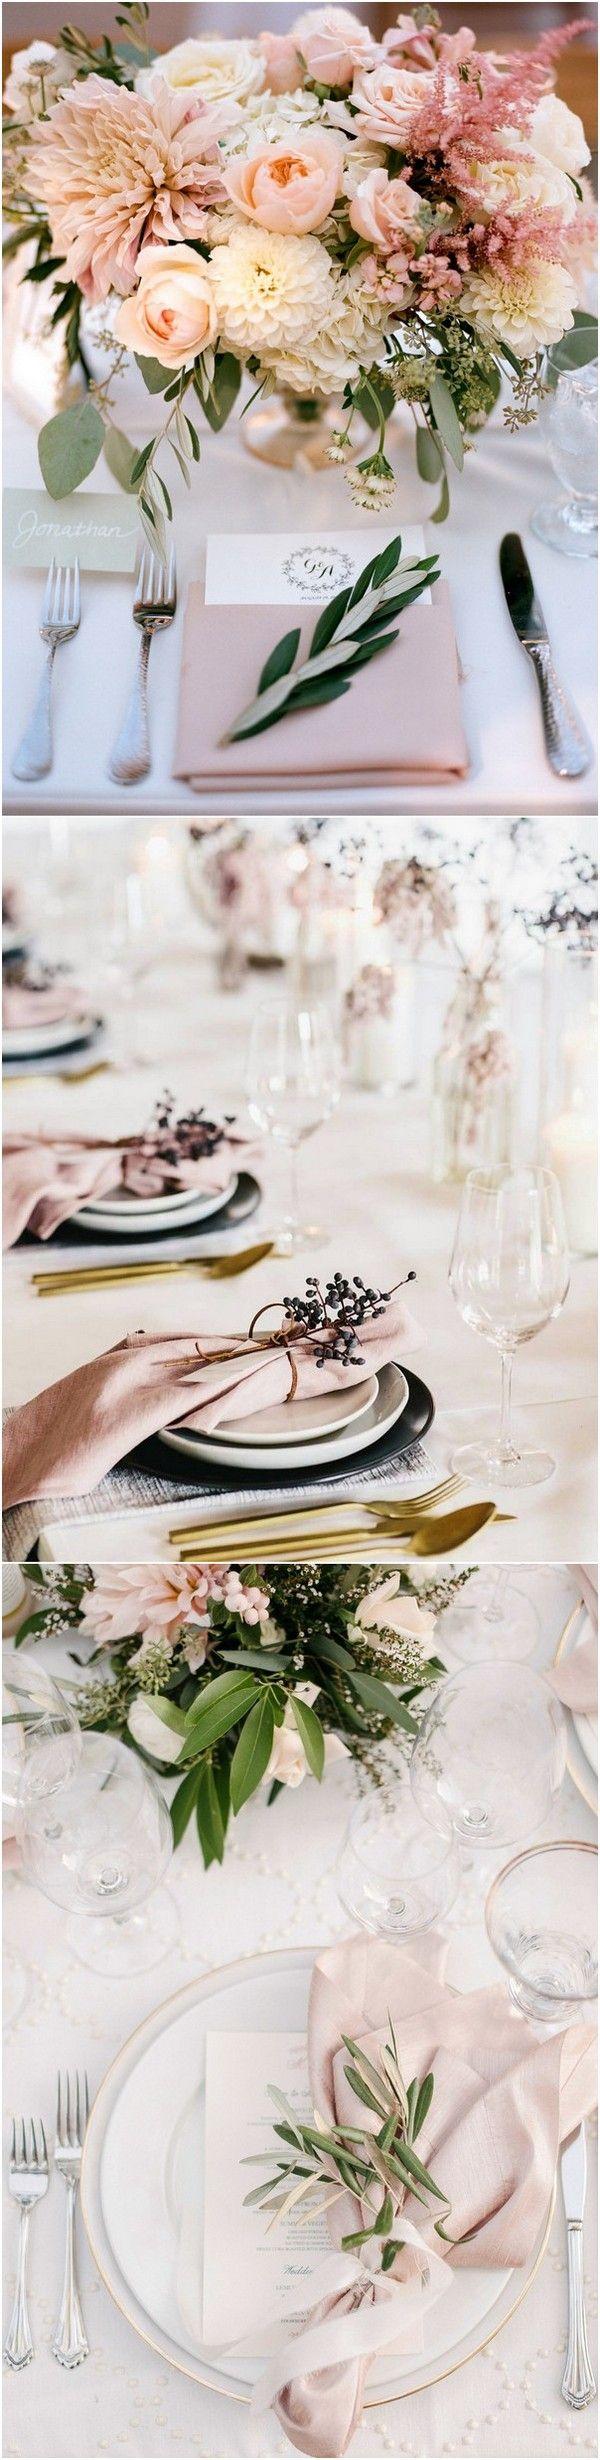 زفاف - Top 15 So Elegant Wedding Table Setting Ideas For 2018